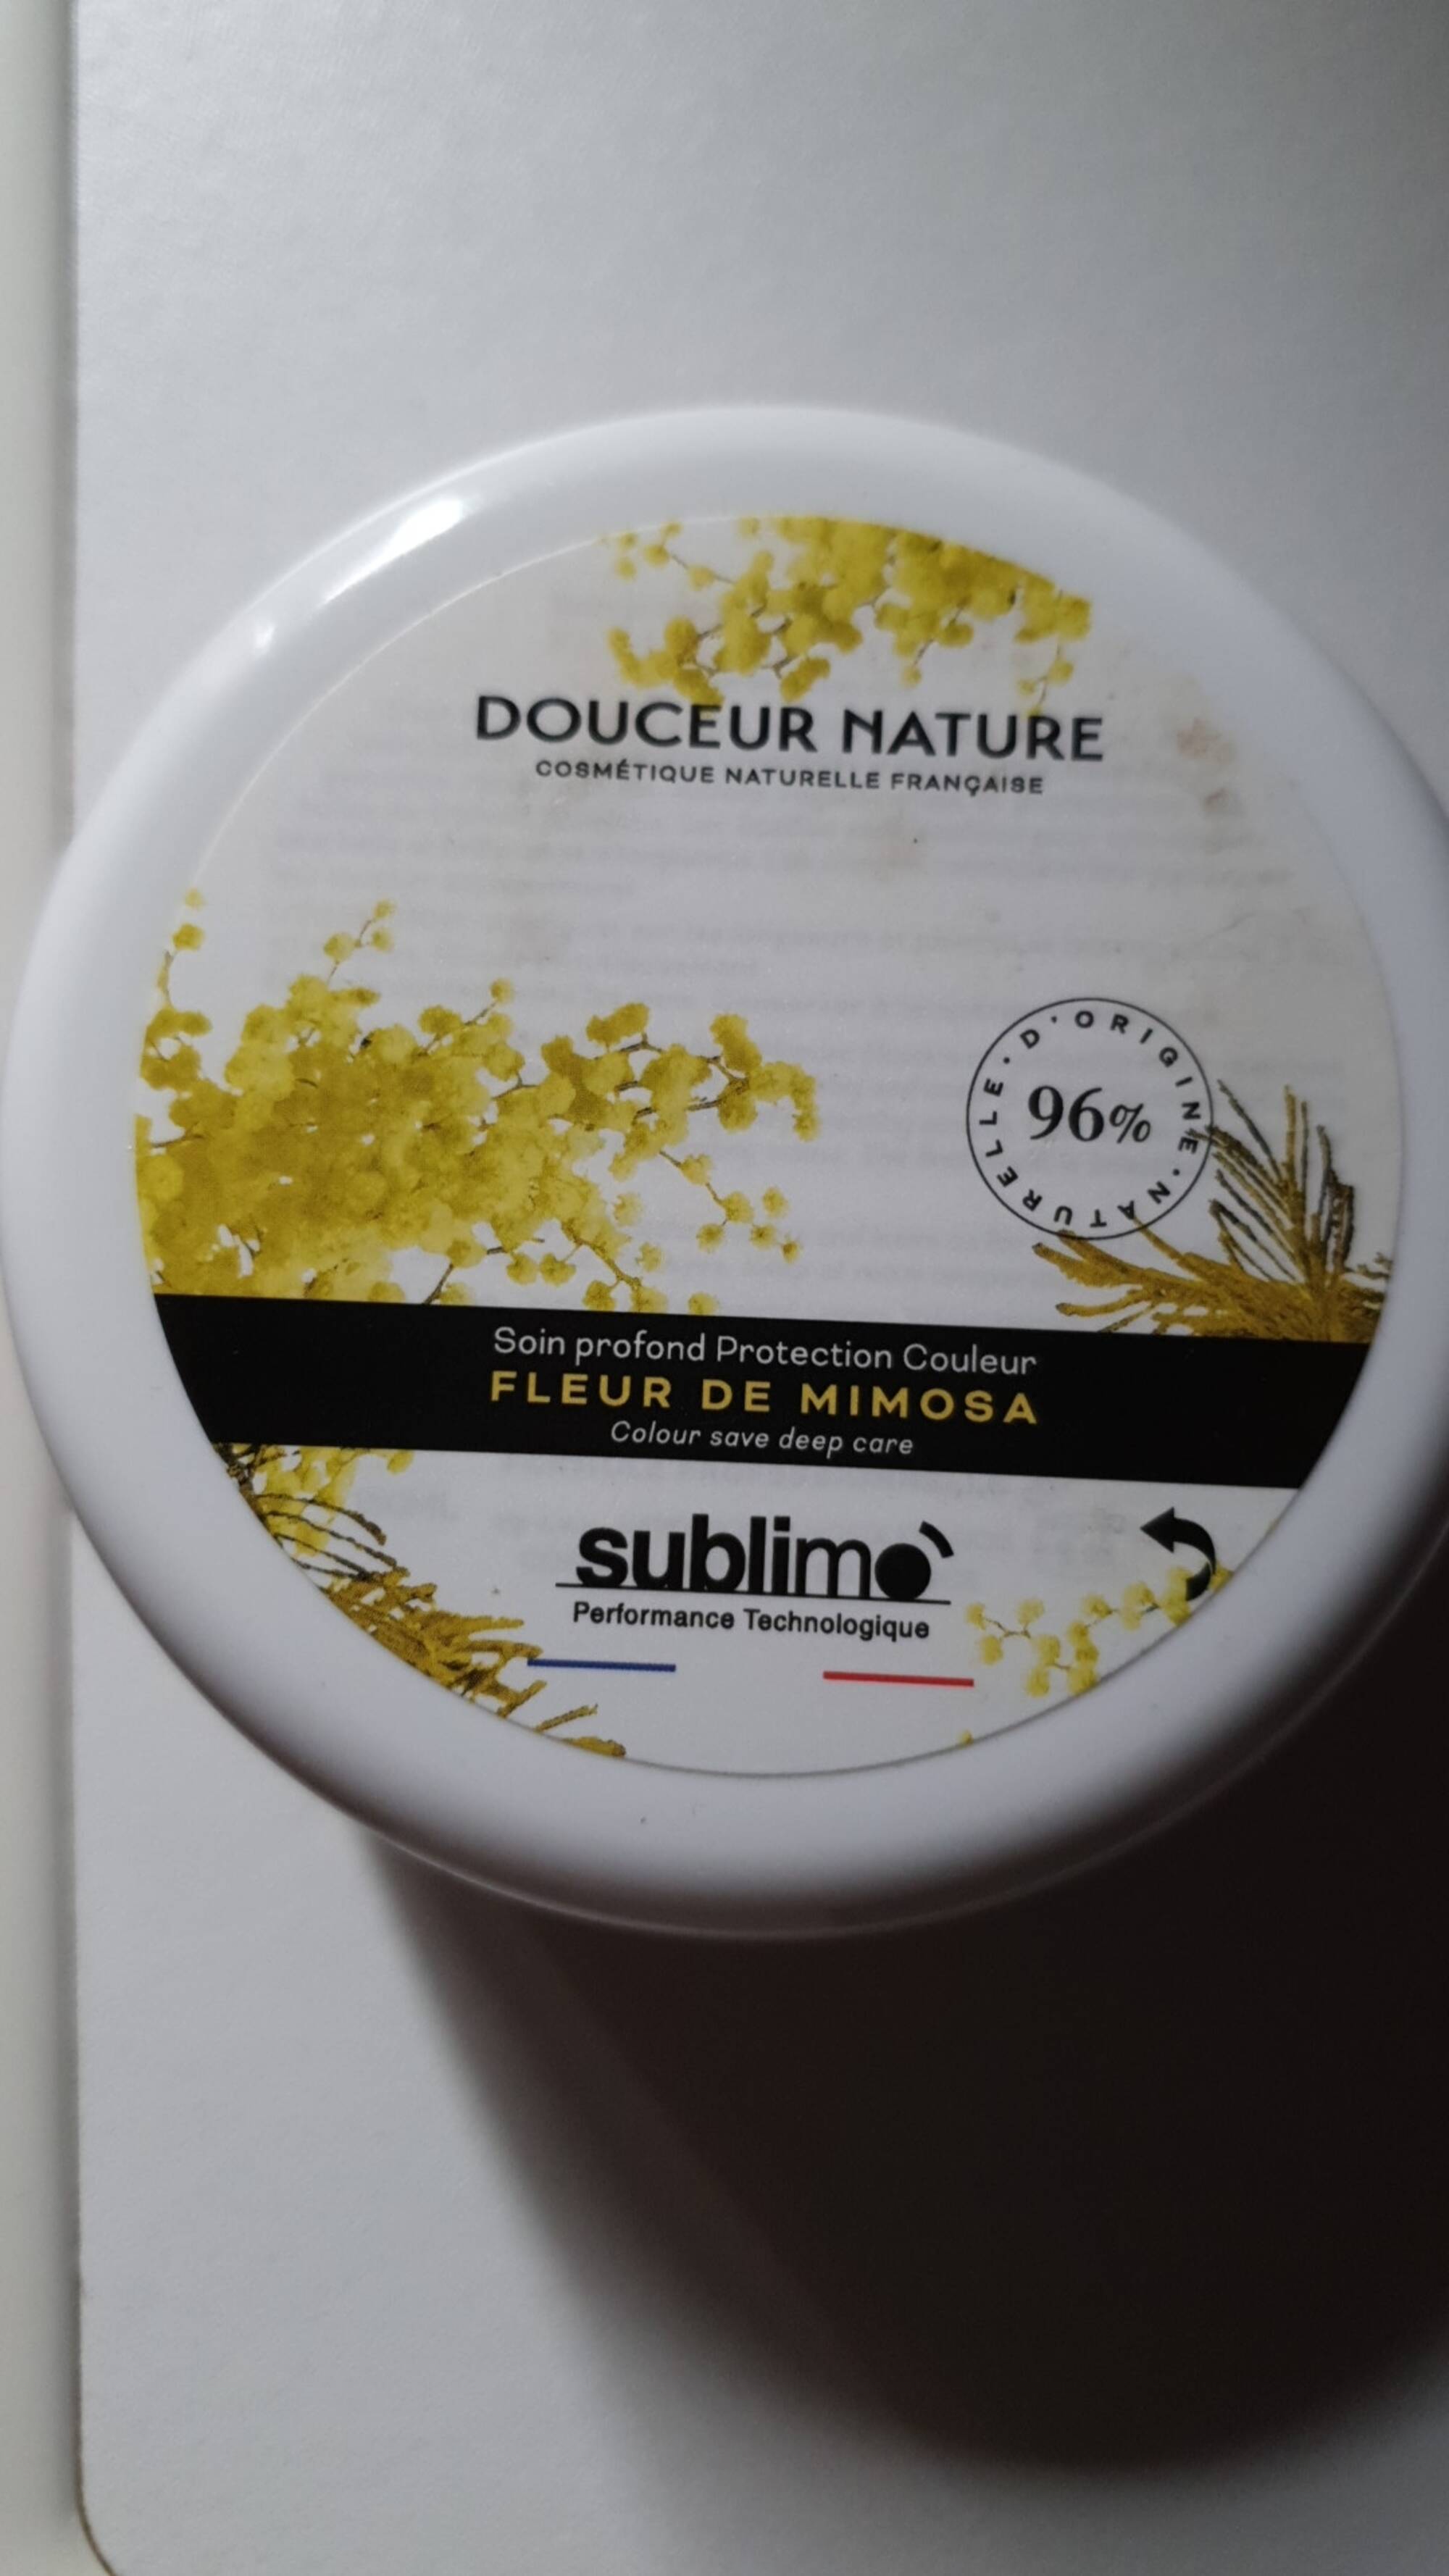 SUBLIMO - Douceur nature - Soin profond protection couleur - Fleur de mimosa